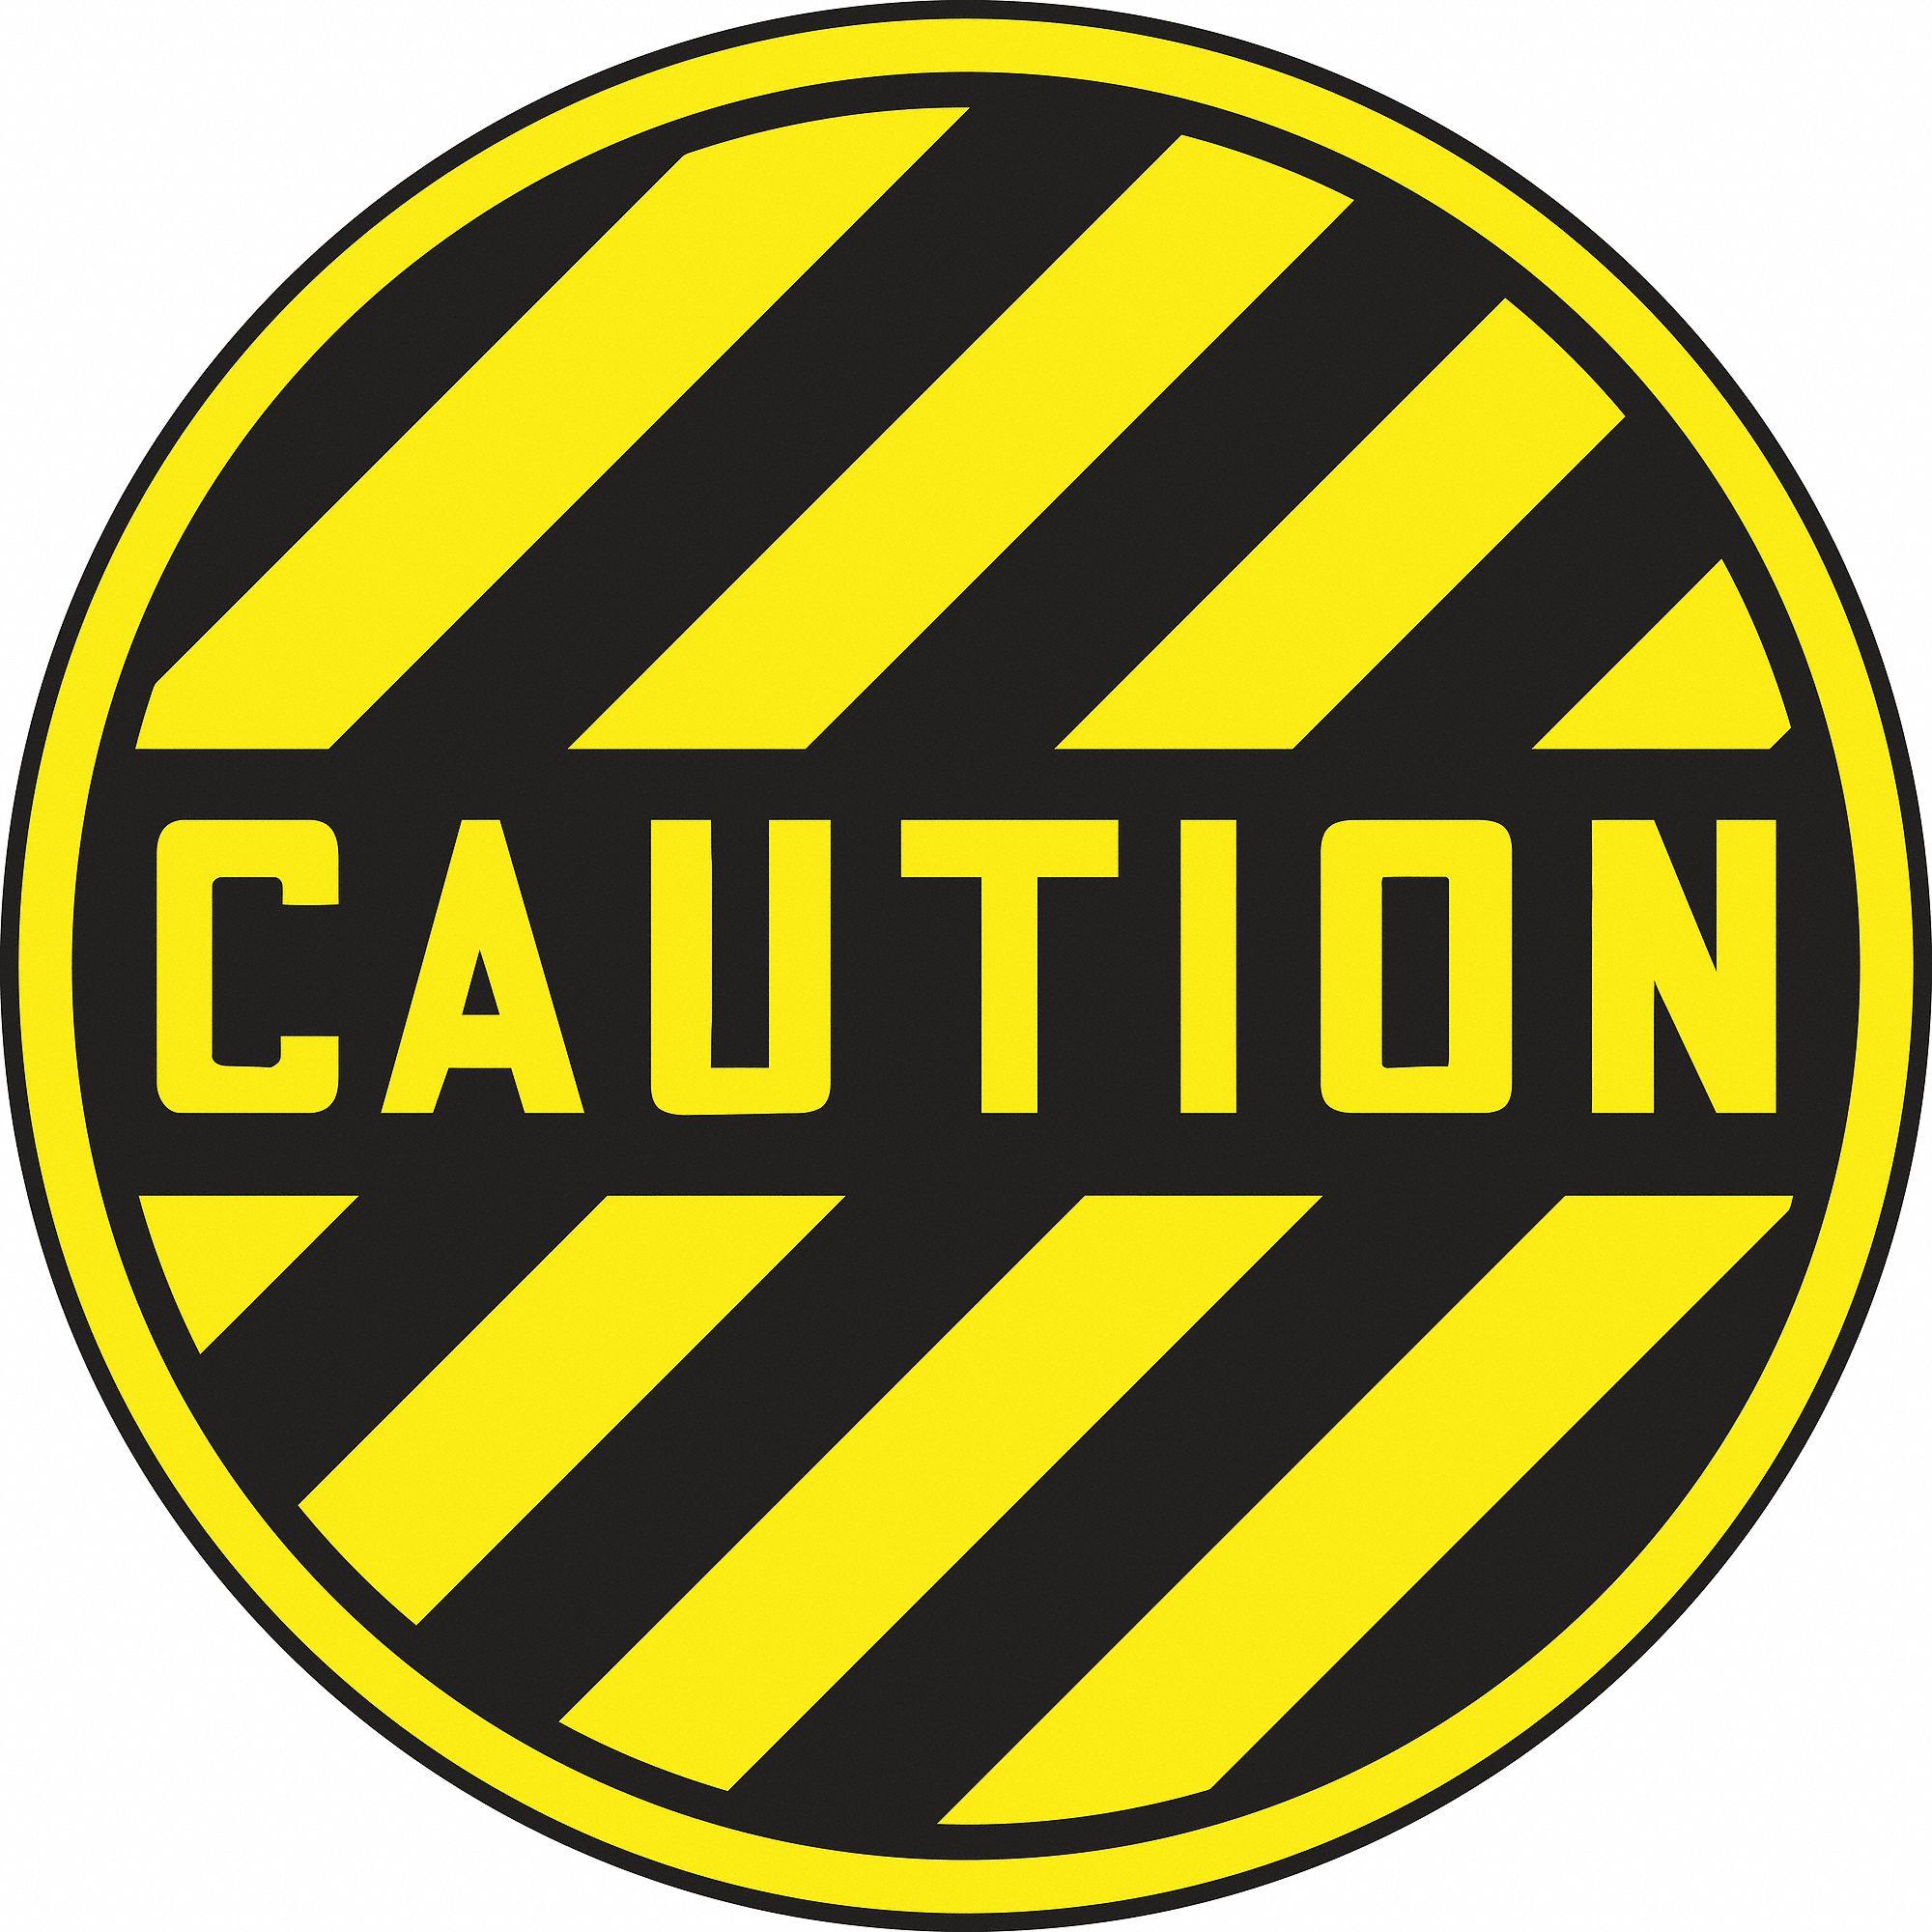 Floor Sign,Caution,17 In. Dia.